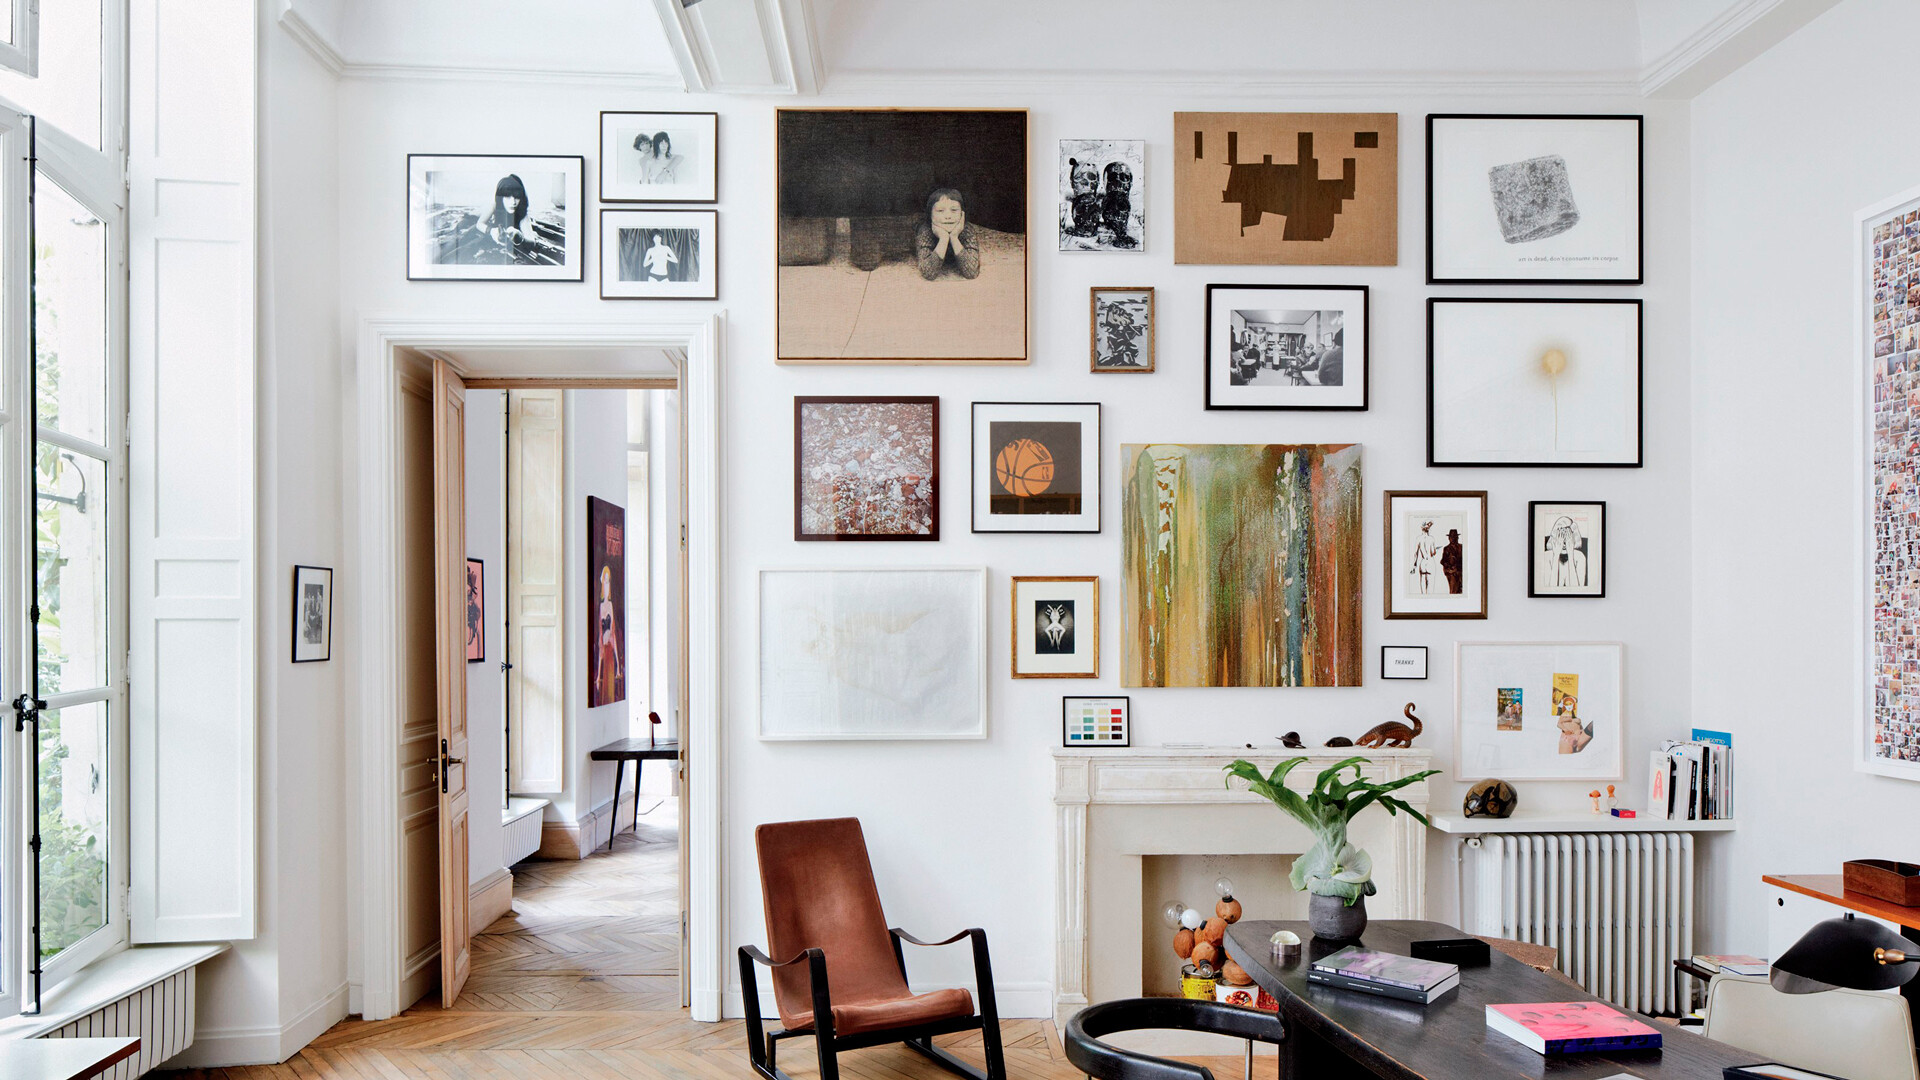 Фотографии для интерьера квартиры на стену